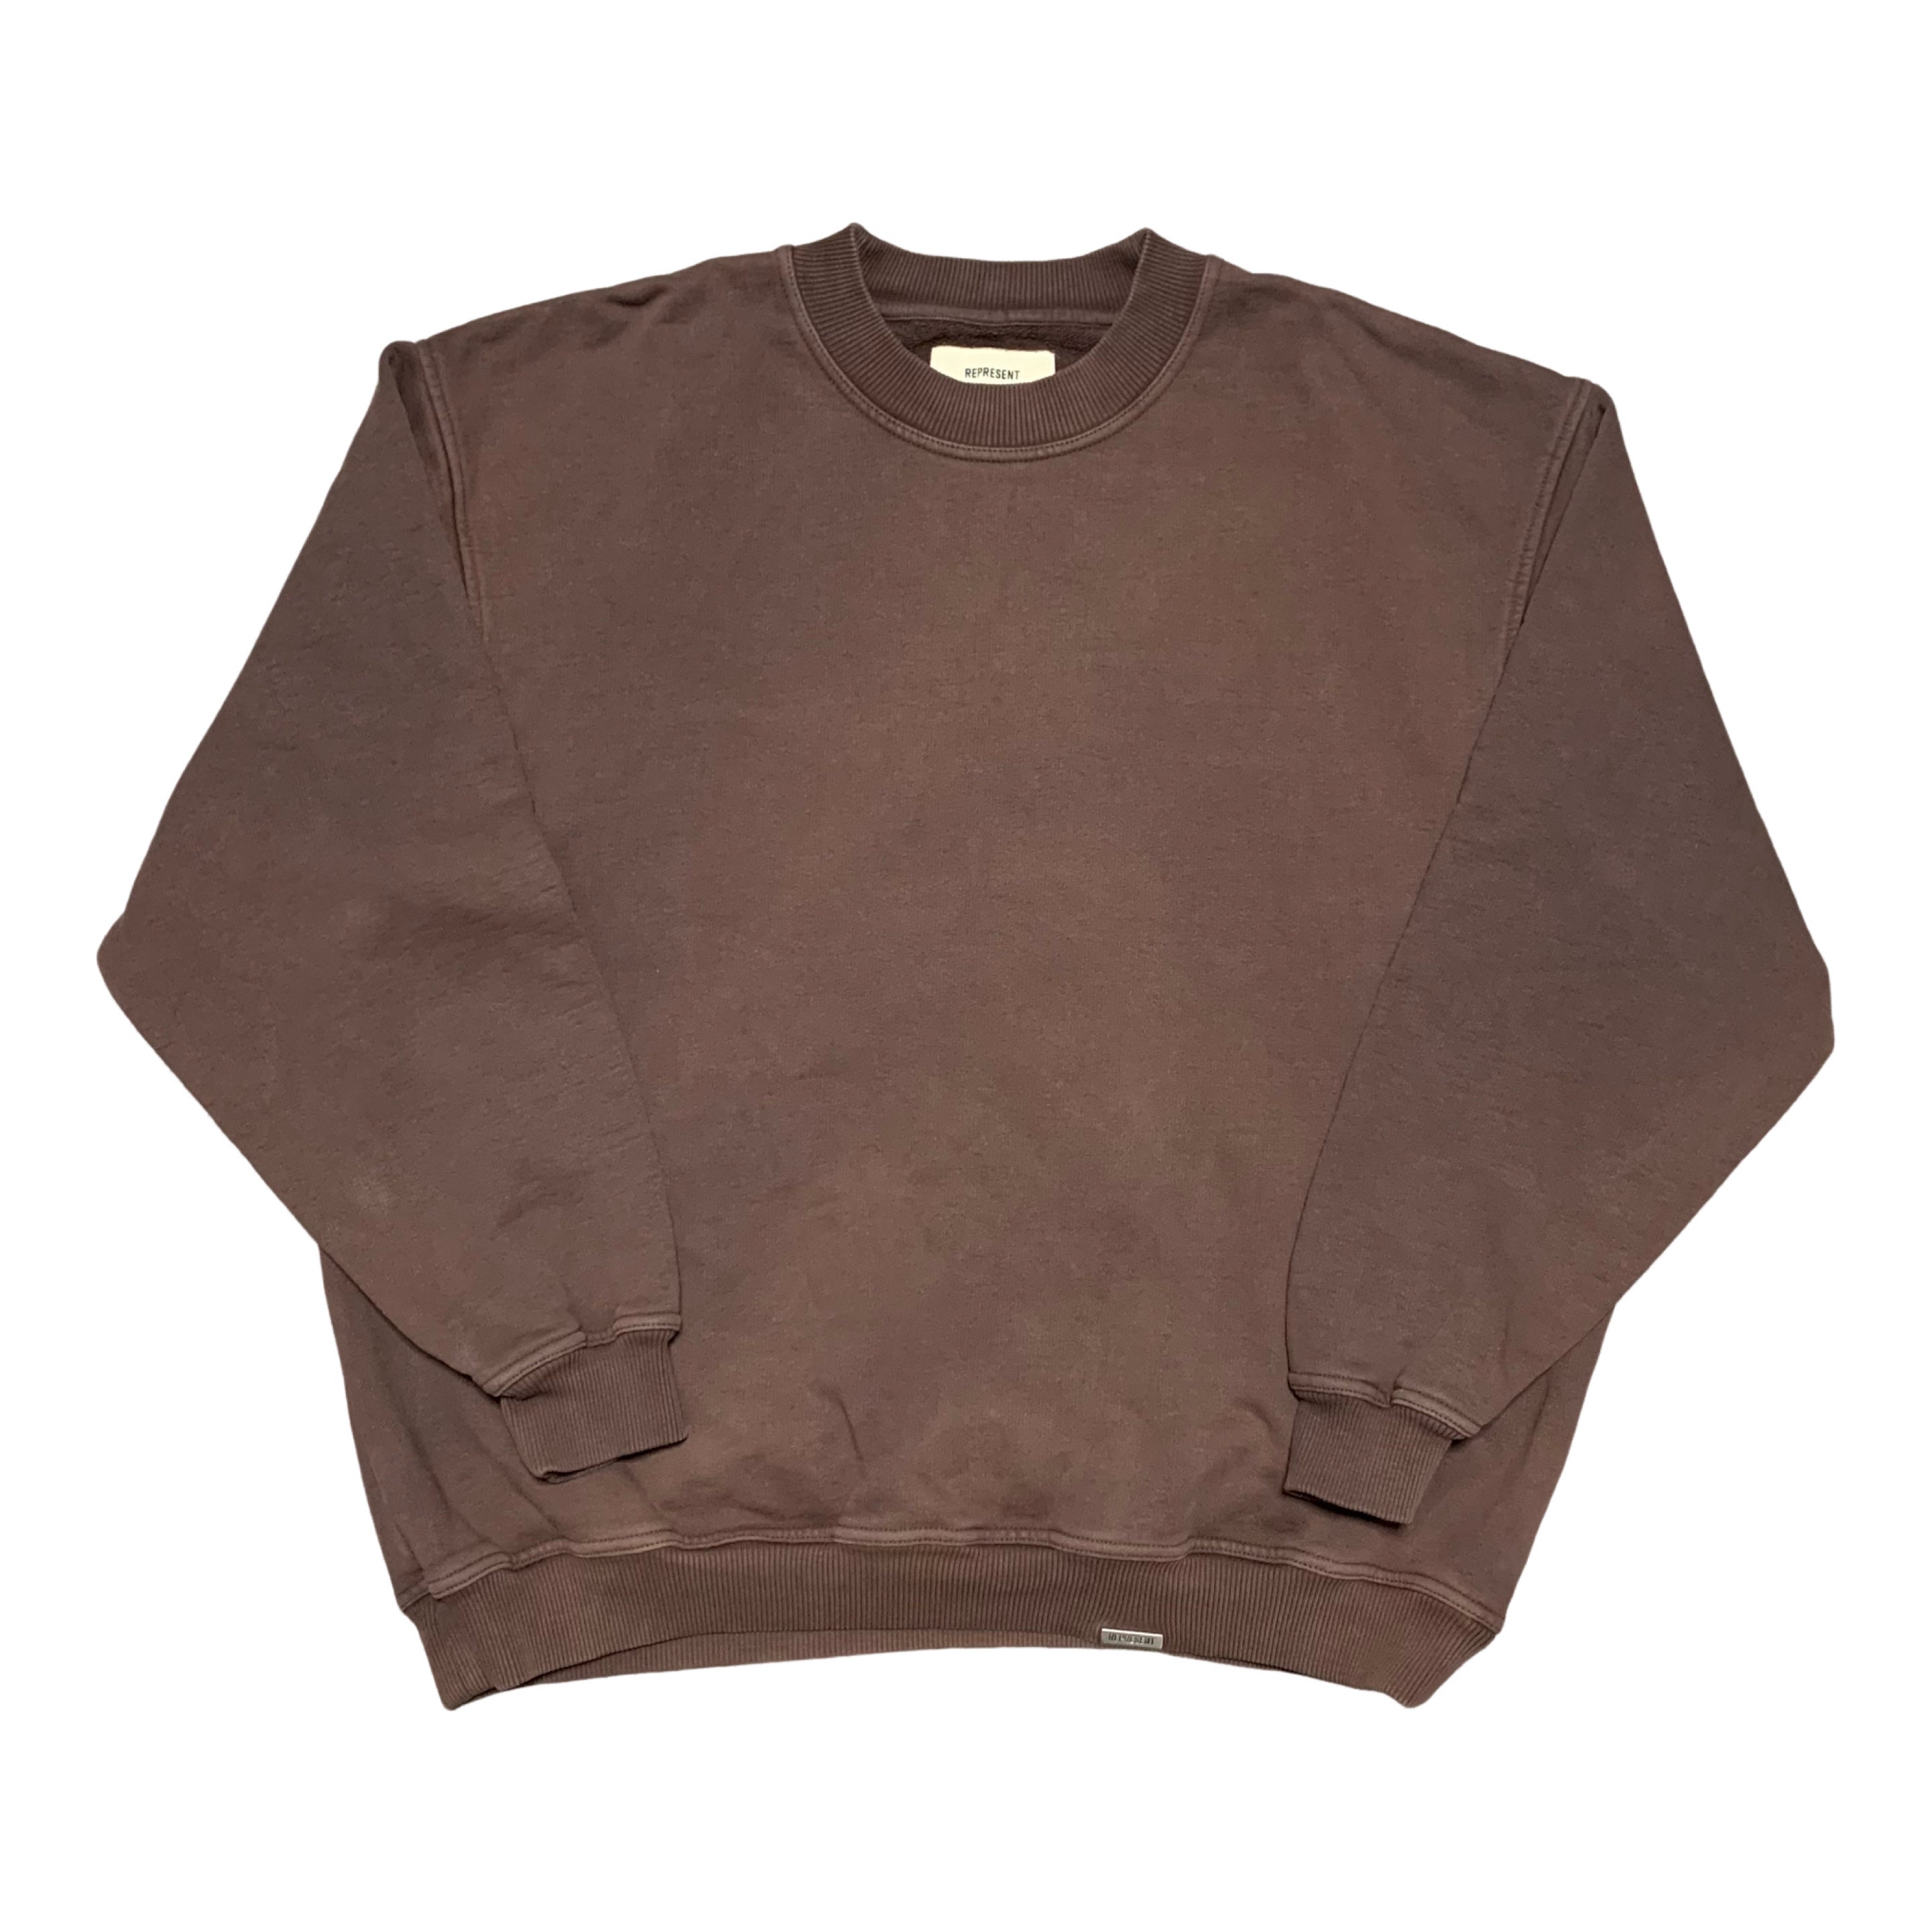 Represent Large Blanks Vintage Brown Sweater Sweatshirt Crewneck